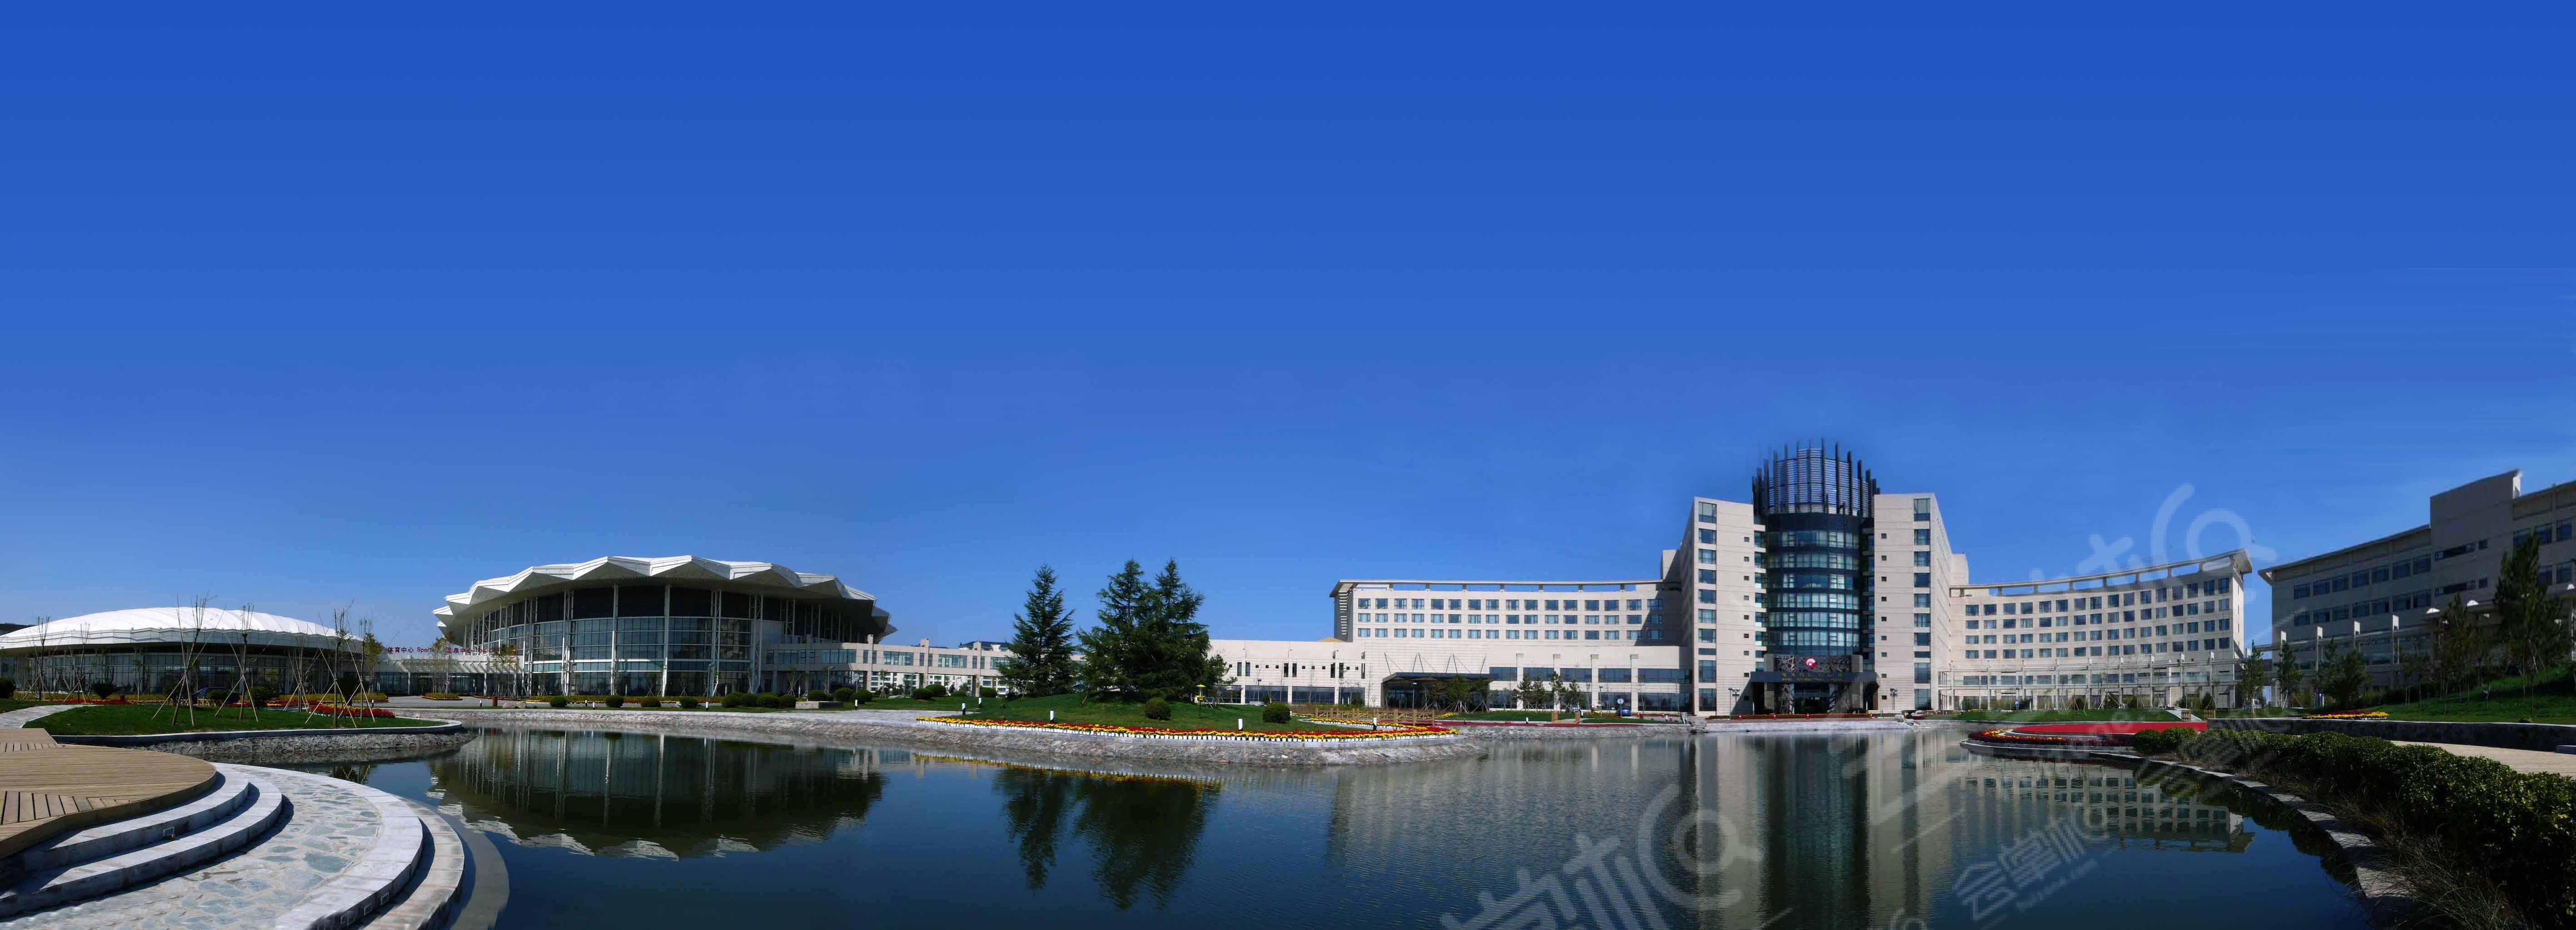 渤海国际会议中心